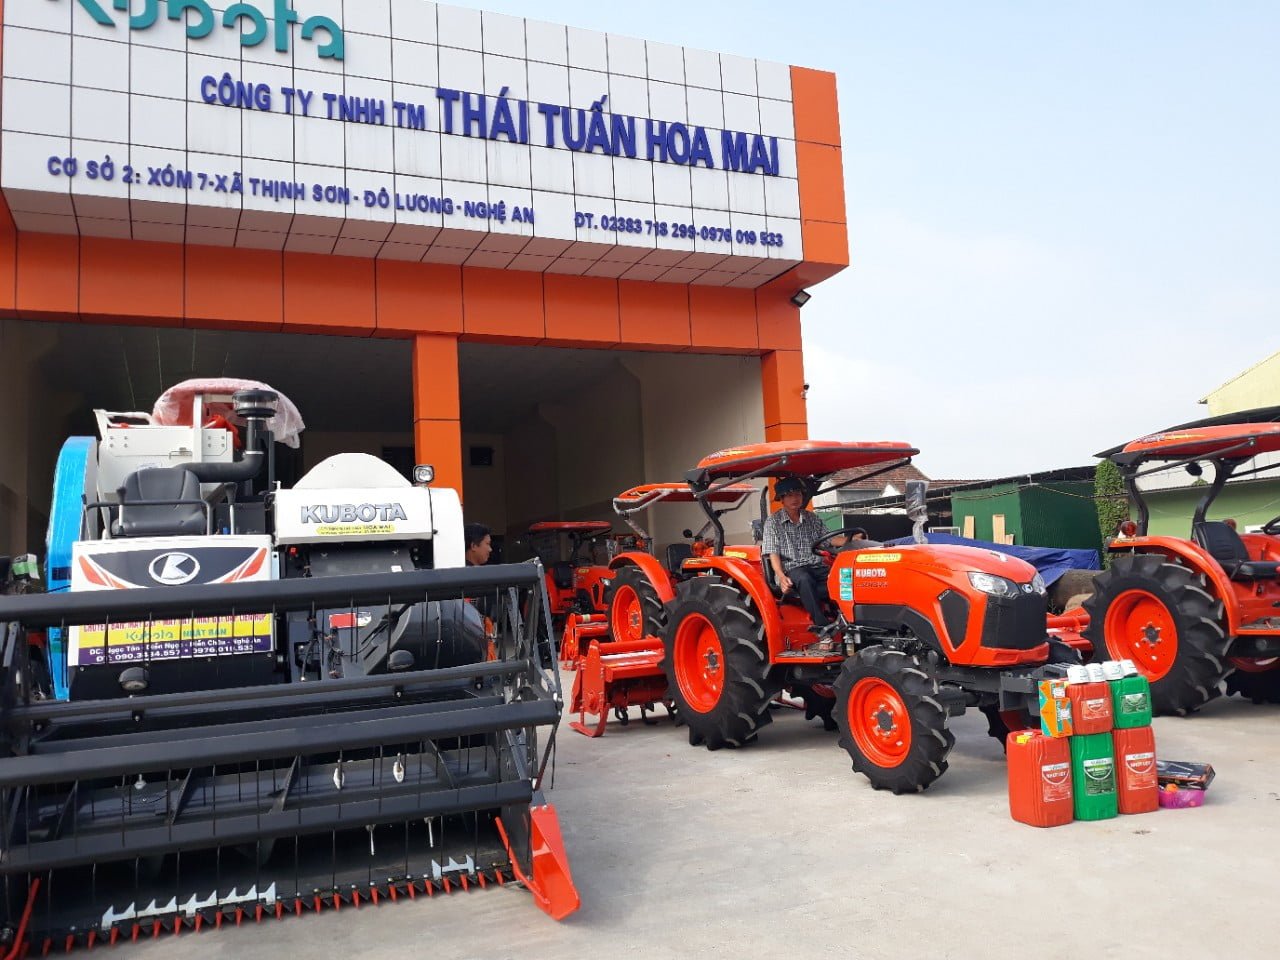 Thái Tuấn Hoa Mai là một trong những công ty phân phối sản phẩm máy nông nghiệp, xe cơ giới hàng đầu tại Nghệ An.